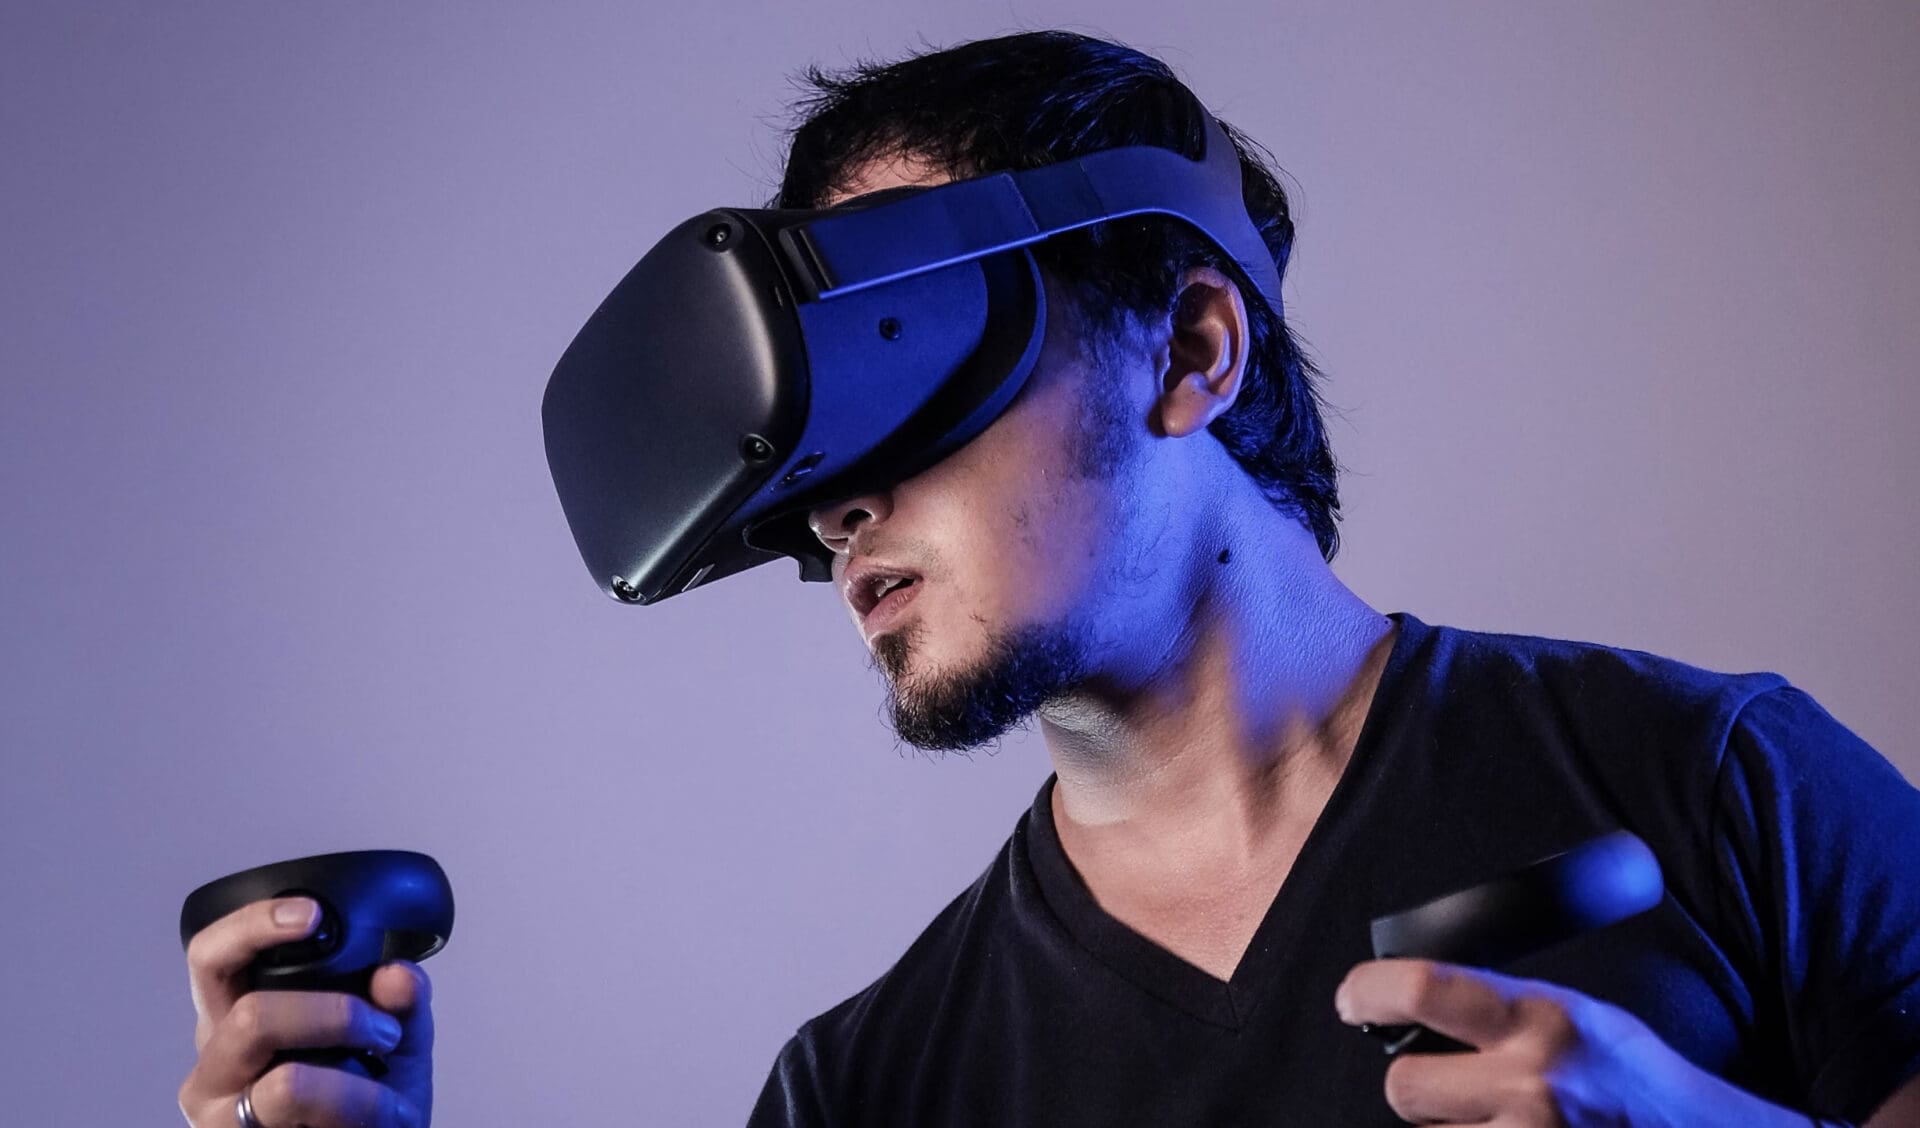 Métaverse : ce joueur est en train de jouer dans un monde virtuel grâce à un casque de réalité virtuelle.